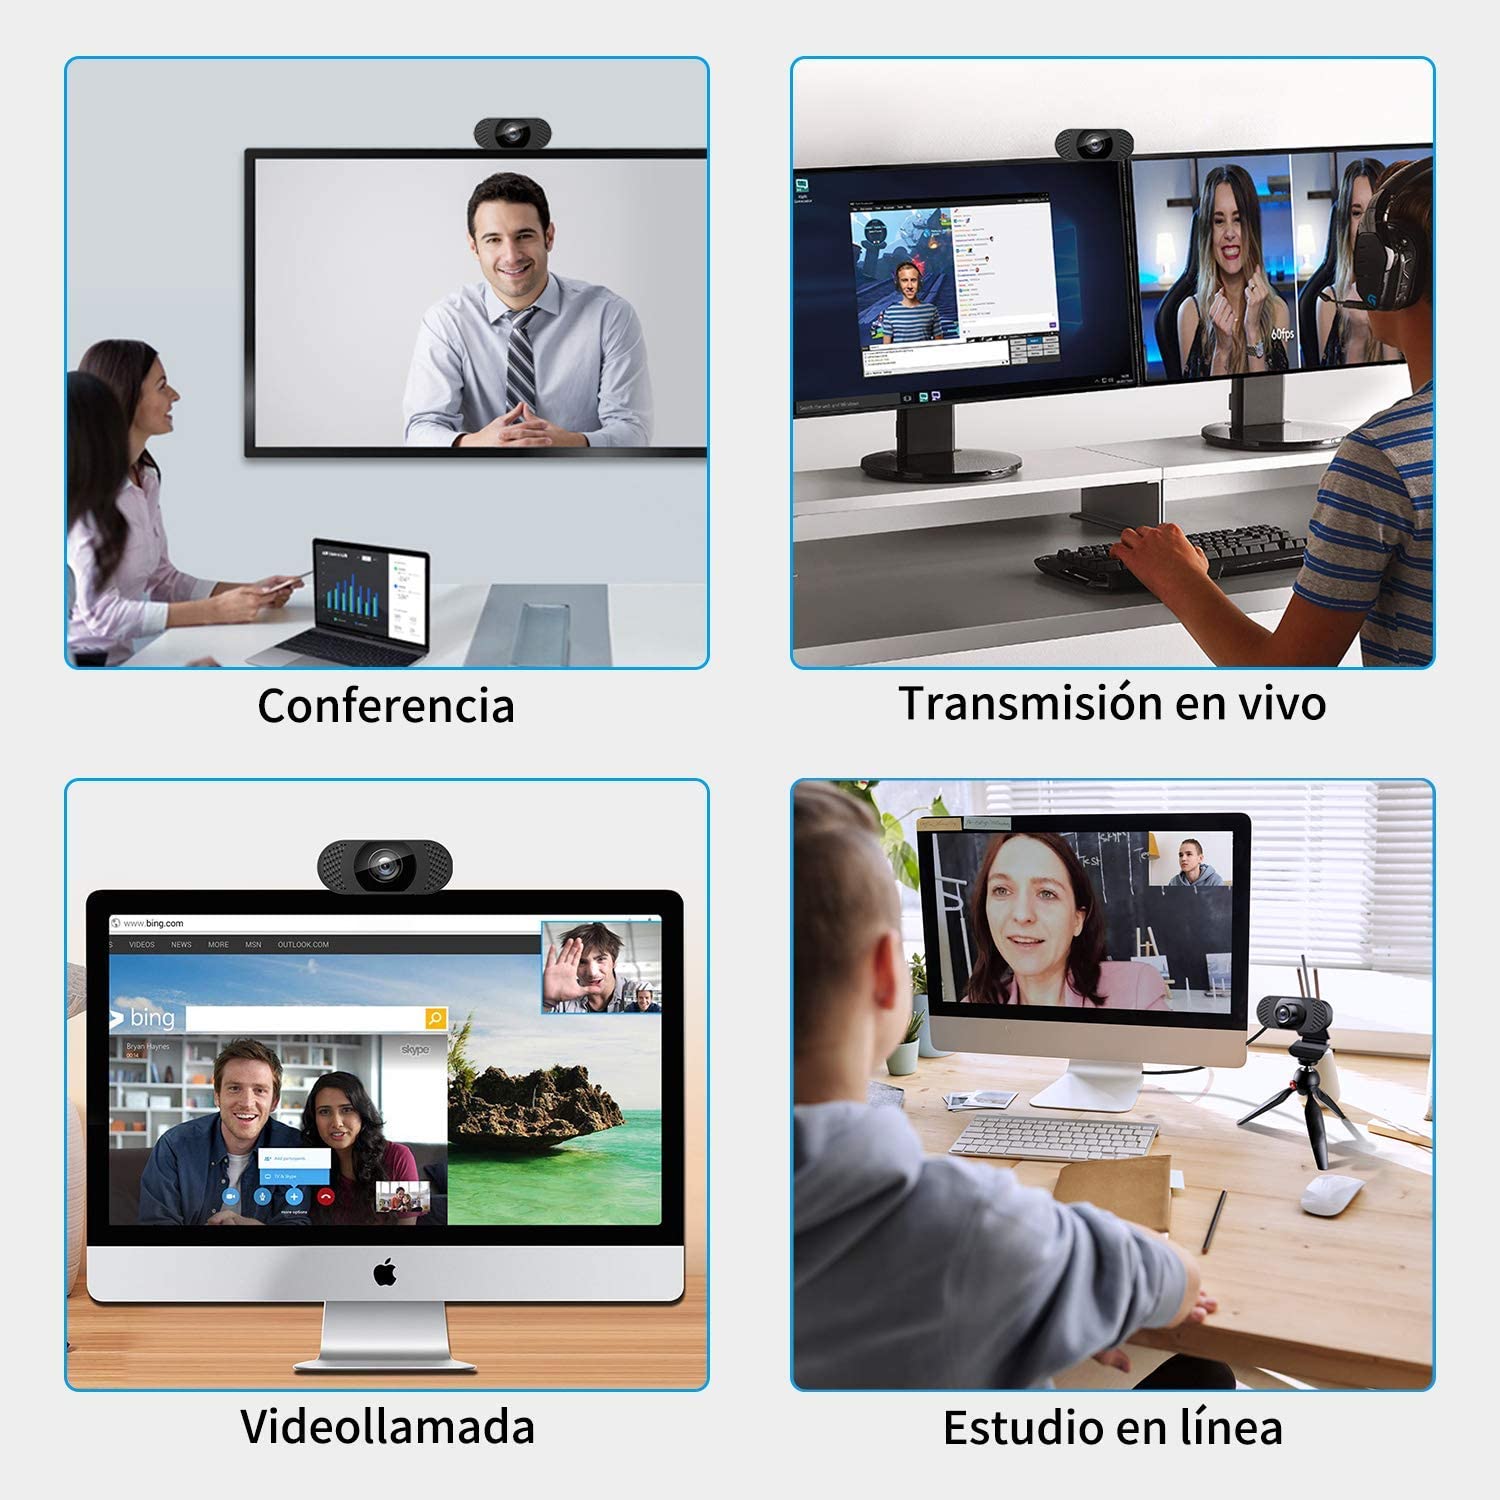 Spedal Webcam 1080P Full HD con Gran Angular de 120° y Micrófono Mac Cámara Web Videoconferencia Compatible con Skype OBS Webcam de USB Plug and Play para Windows 